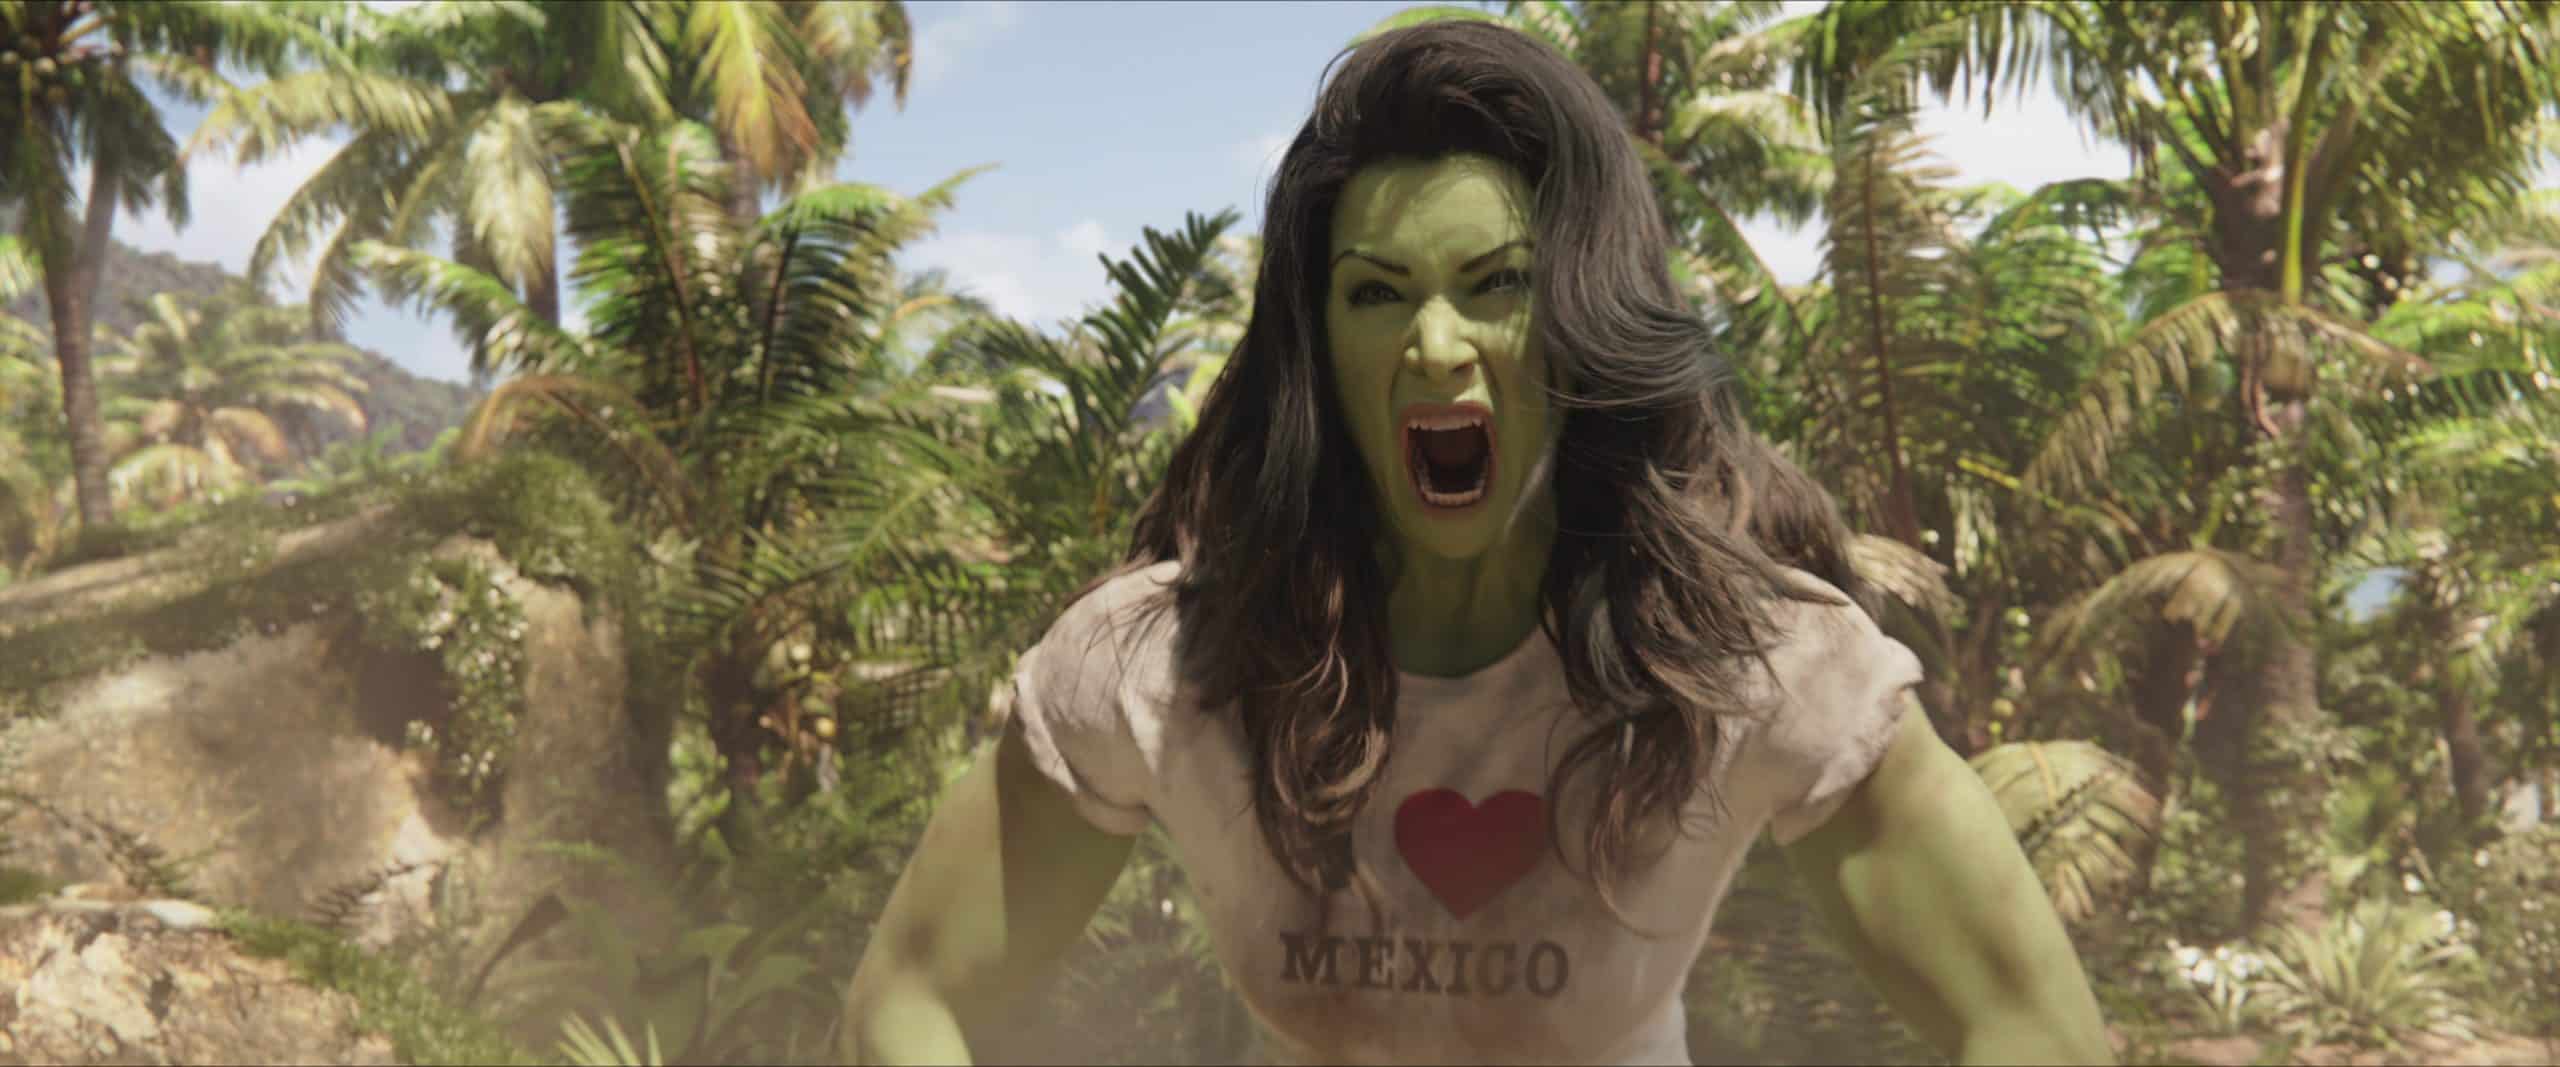 Mulher-Hulk imagem da série